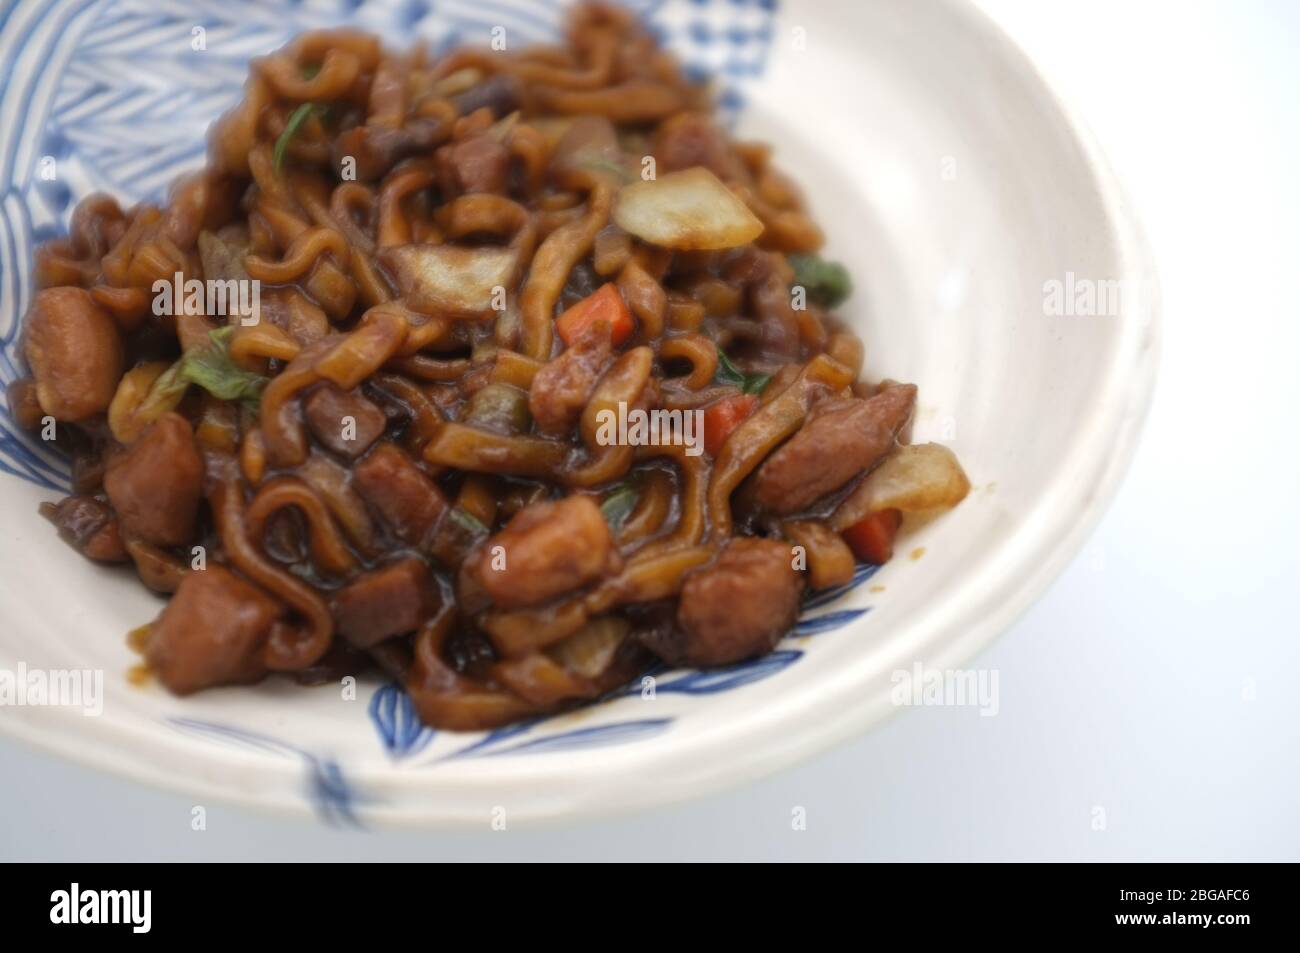 Nouilles aux haricots noirs coréens ou jajangmyeon - nouilles avec sauce noire Banque D'Images